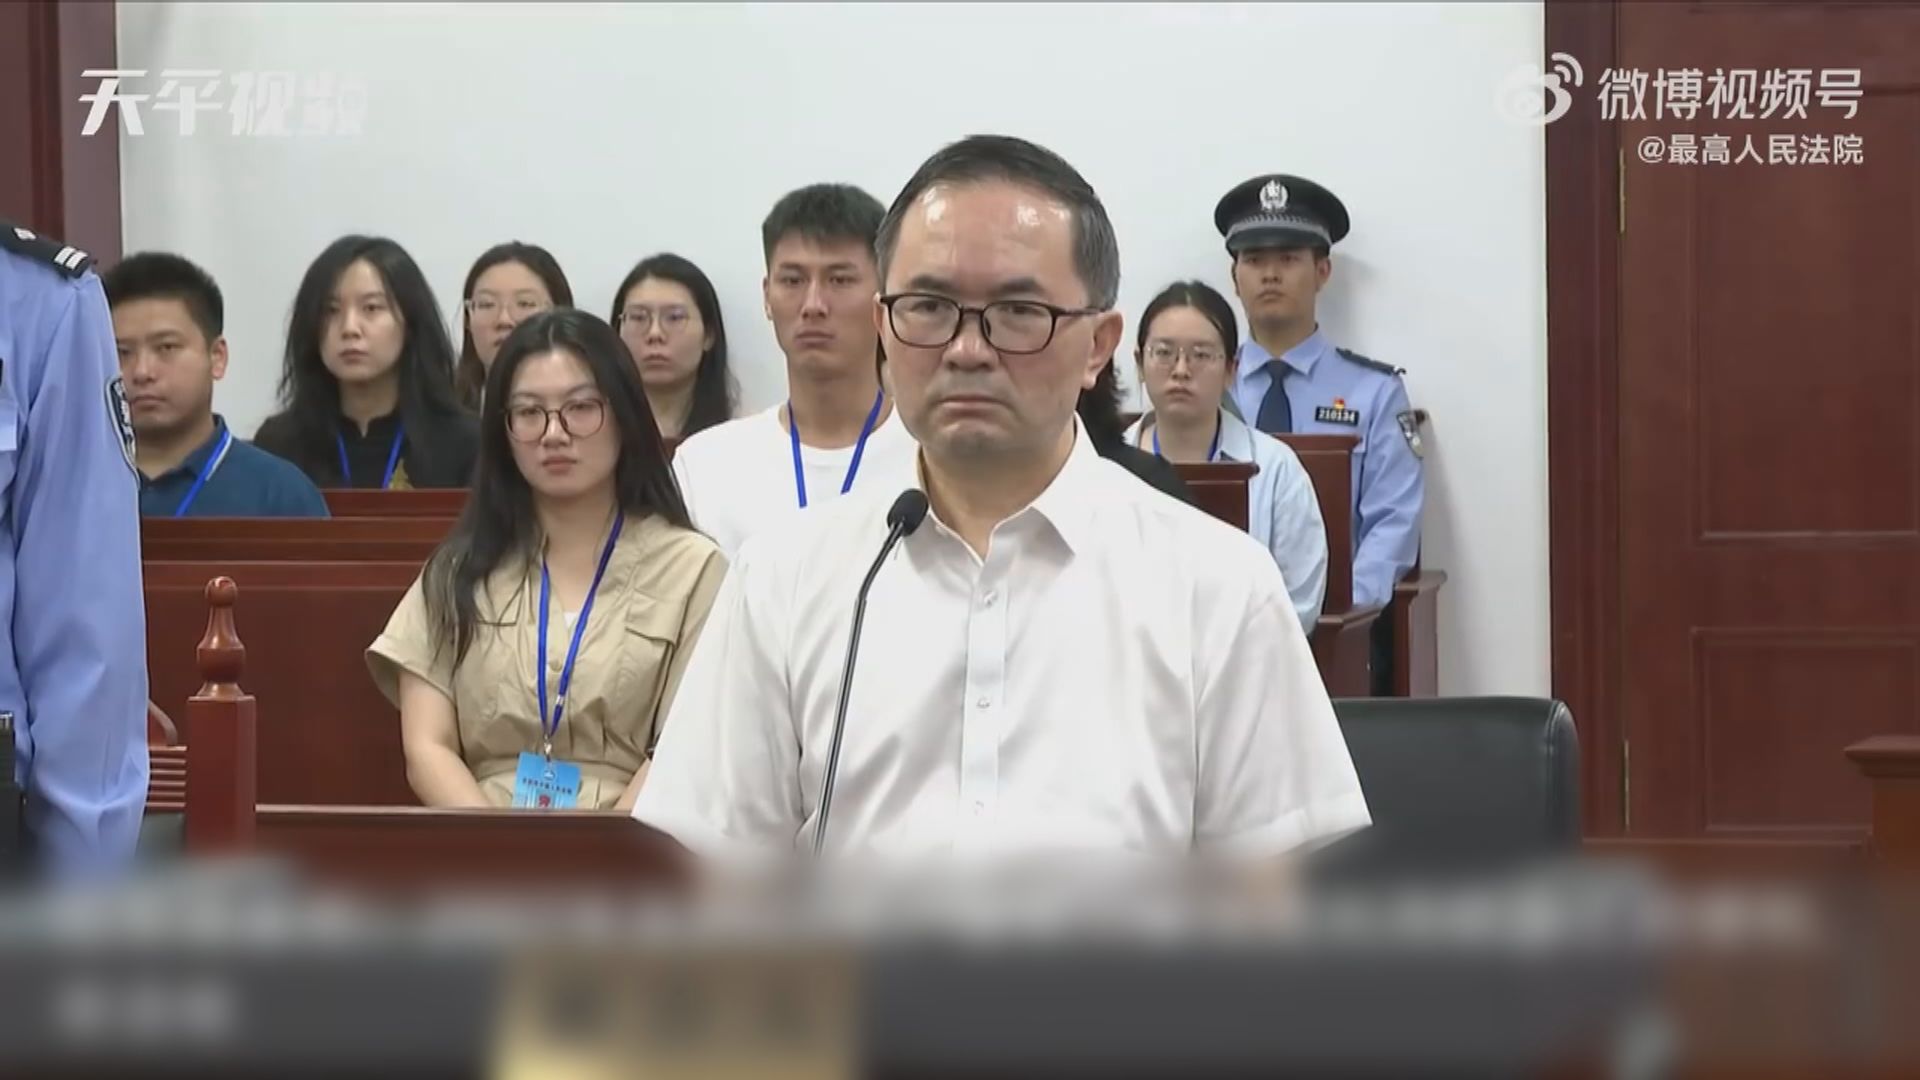 崔茂虎受賄案一審宣判處以有期徒刑11年 罰款150萬元人民幣